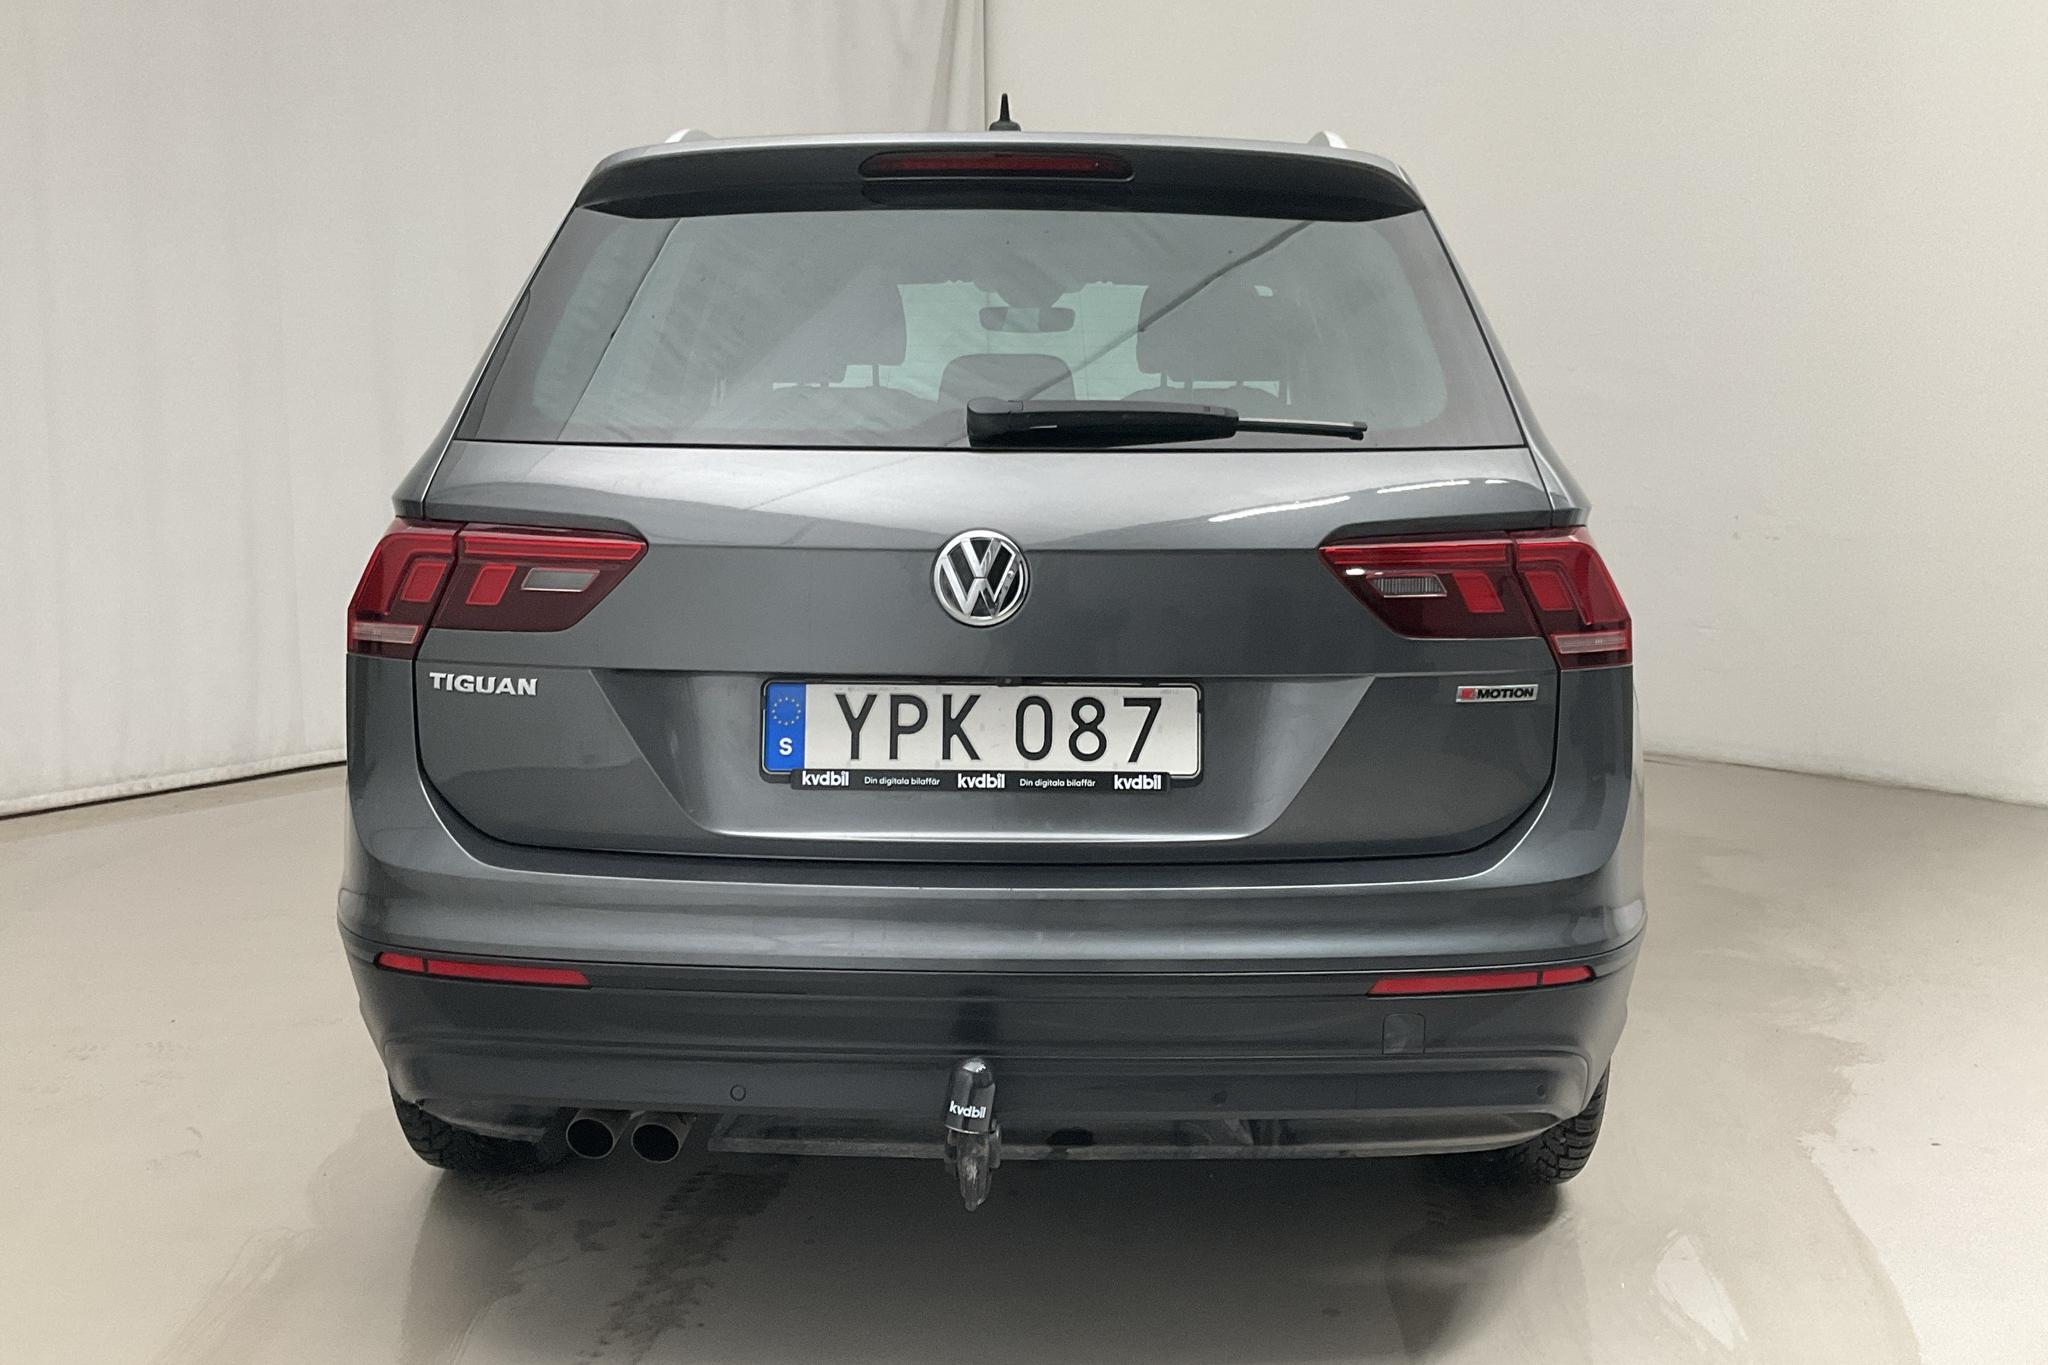 VW Tiguan 1.4 TSI 4MOTION (150hk) - 70 390 km - Automatic - silver - 2018